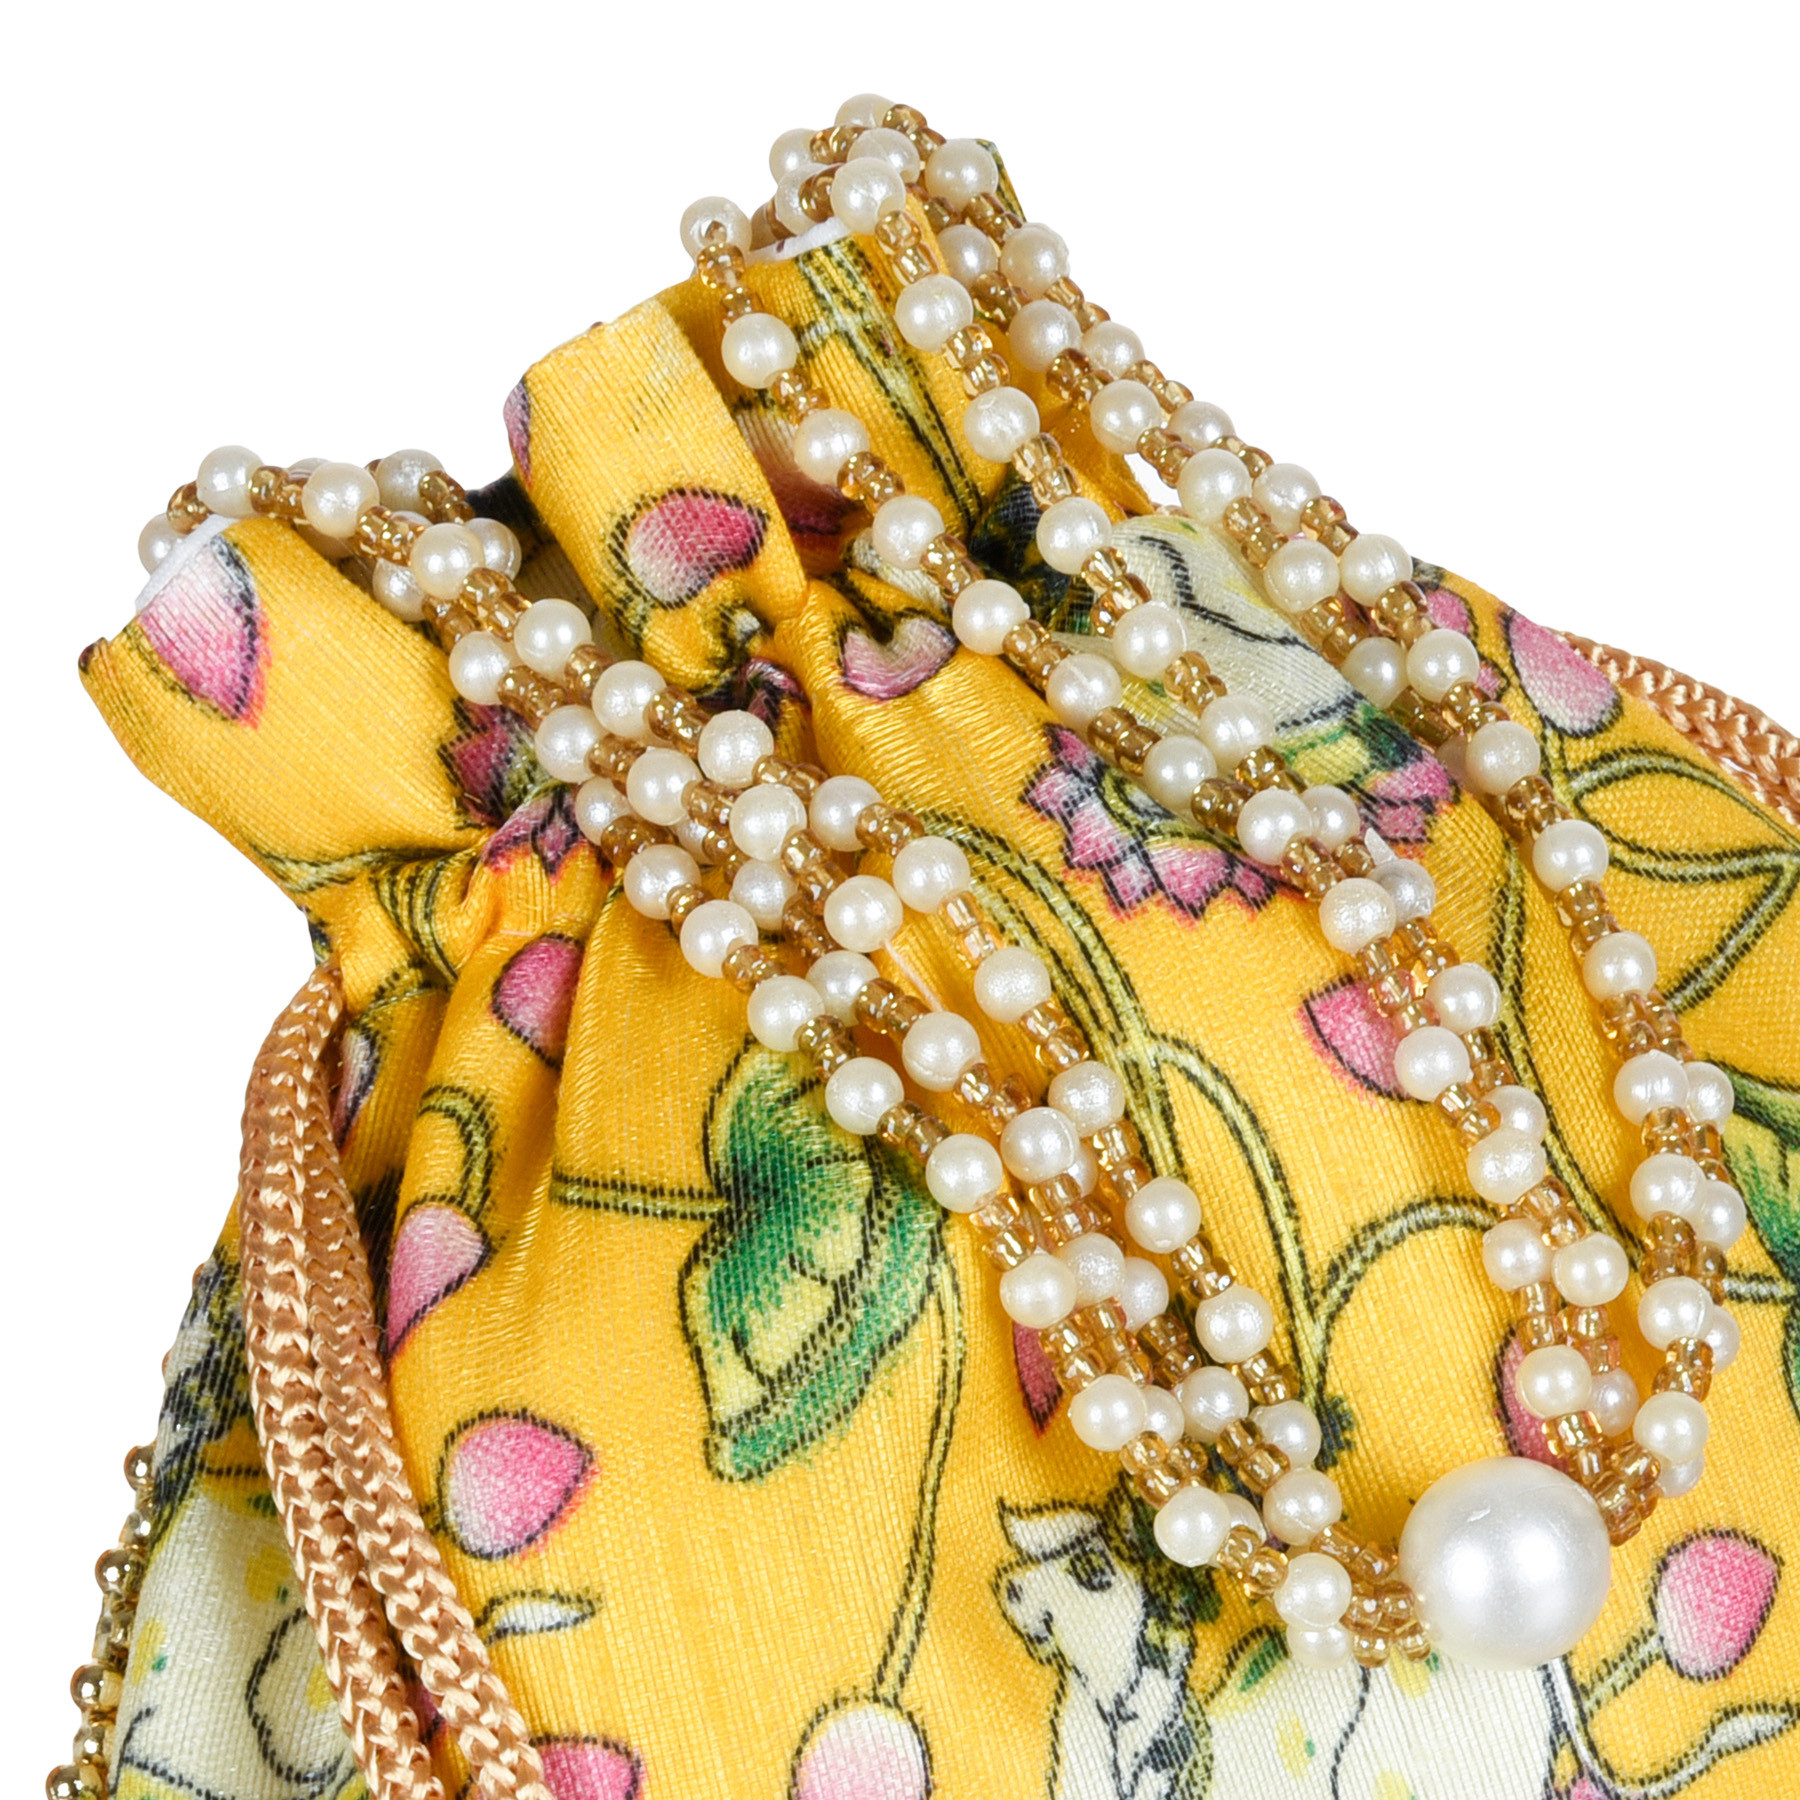 Kuber Industries Potli | Silk Wedding Potli | Wallet Potli | Christmas Gift Potli | Baby Shower Potli | Traditional Shagun Potli | Drawstring with Beads Handle Potli | Cow-Design Patli Potli | Yellow